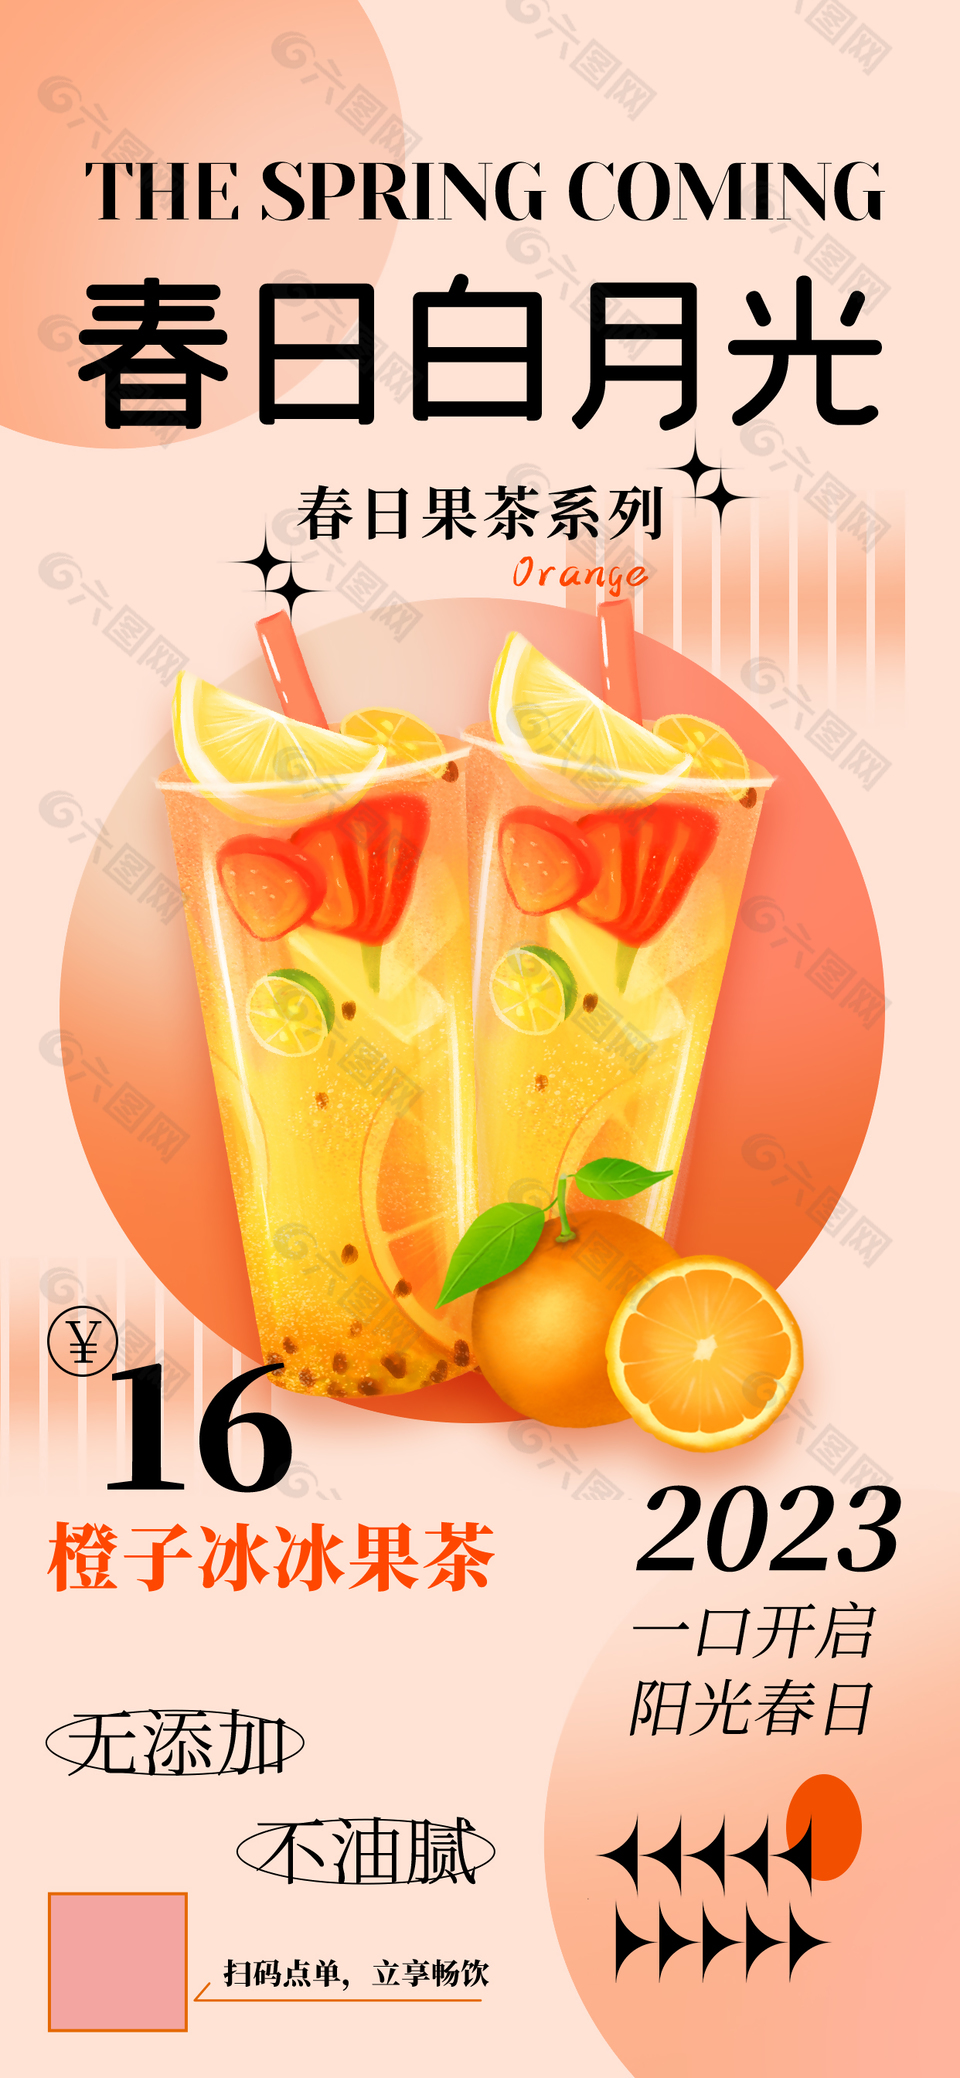 橙子冰冰茶饮创意海报素材